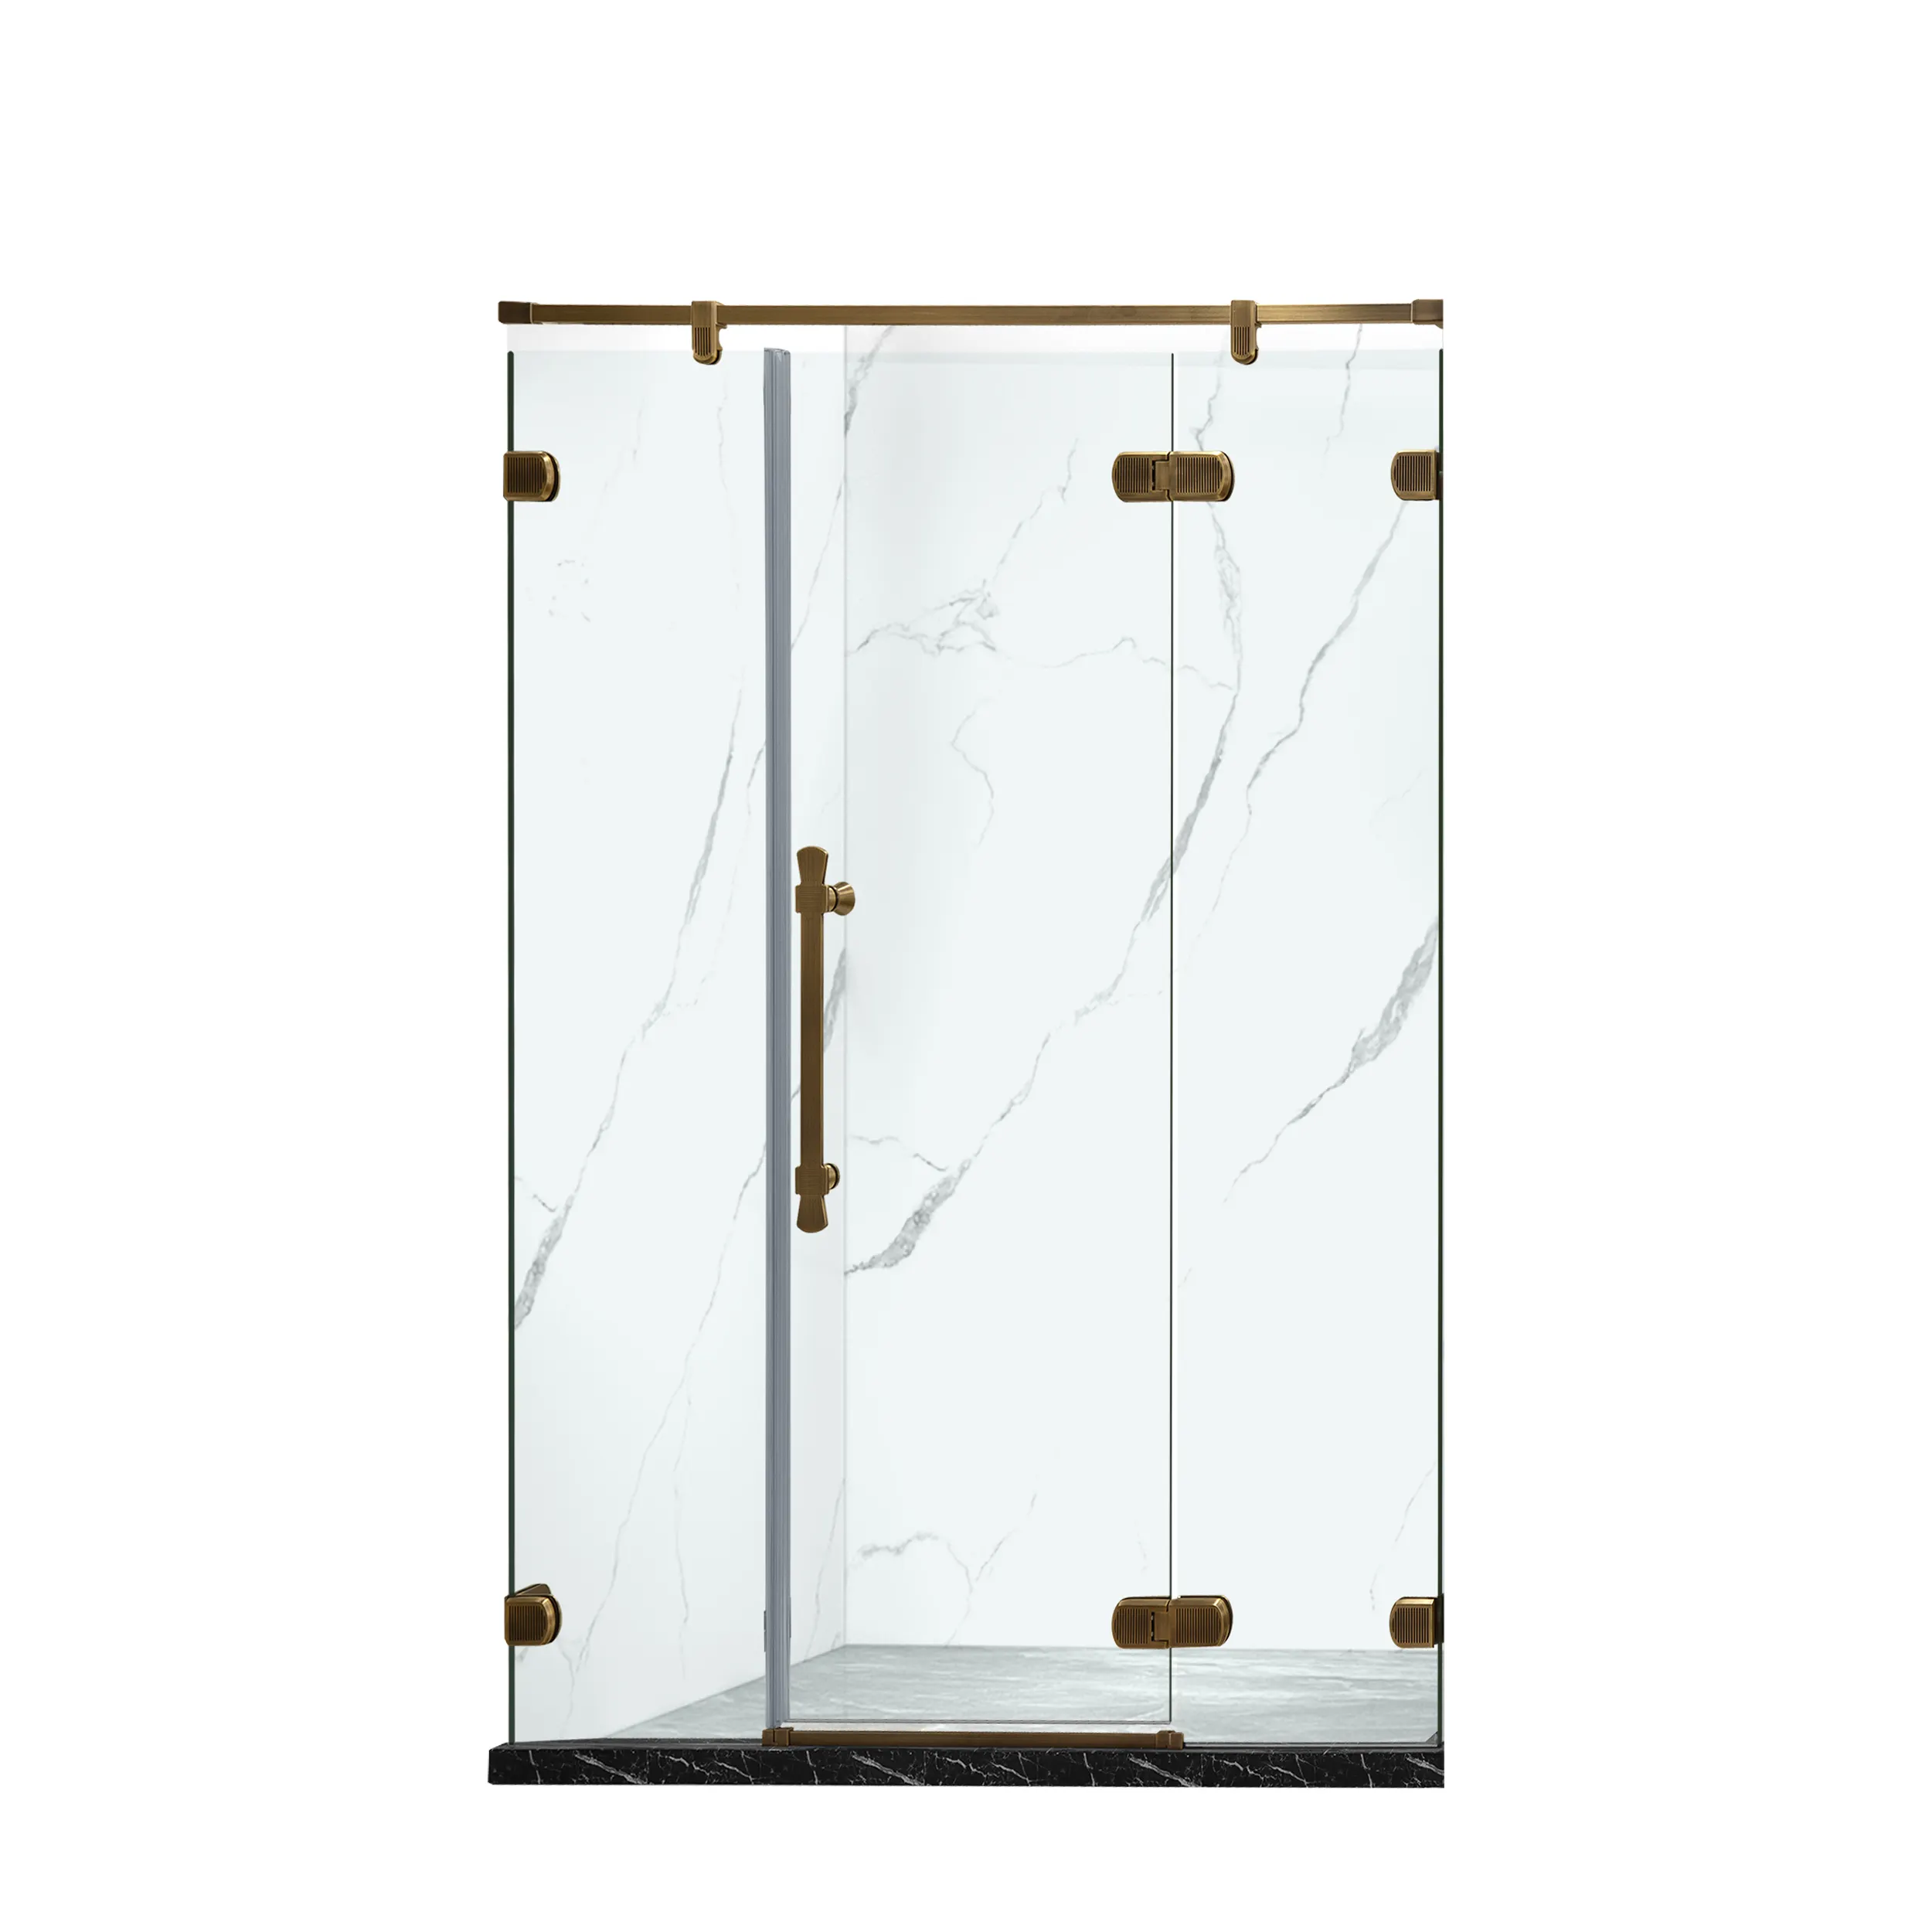 TNS TH1201-2 tek 10mm taraflı cam yüksek kaliteli altın pirinç menteşe kapı sadece duş kabini taşınabilir duş